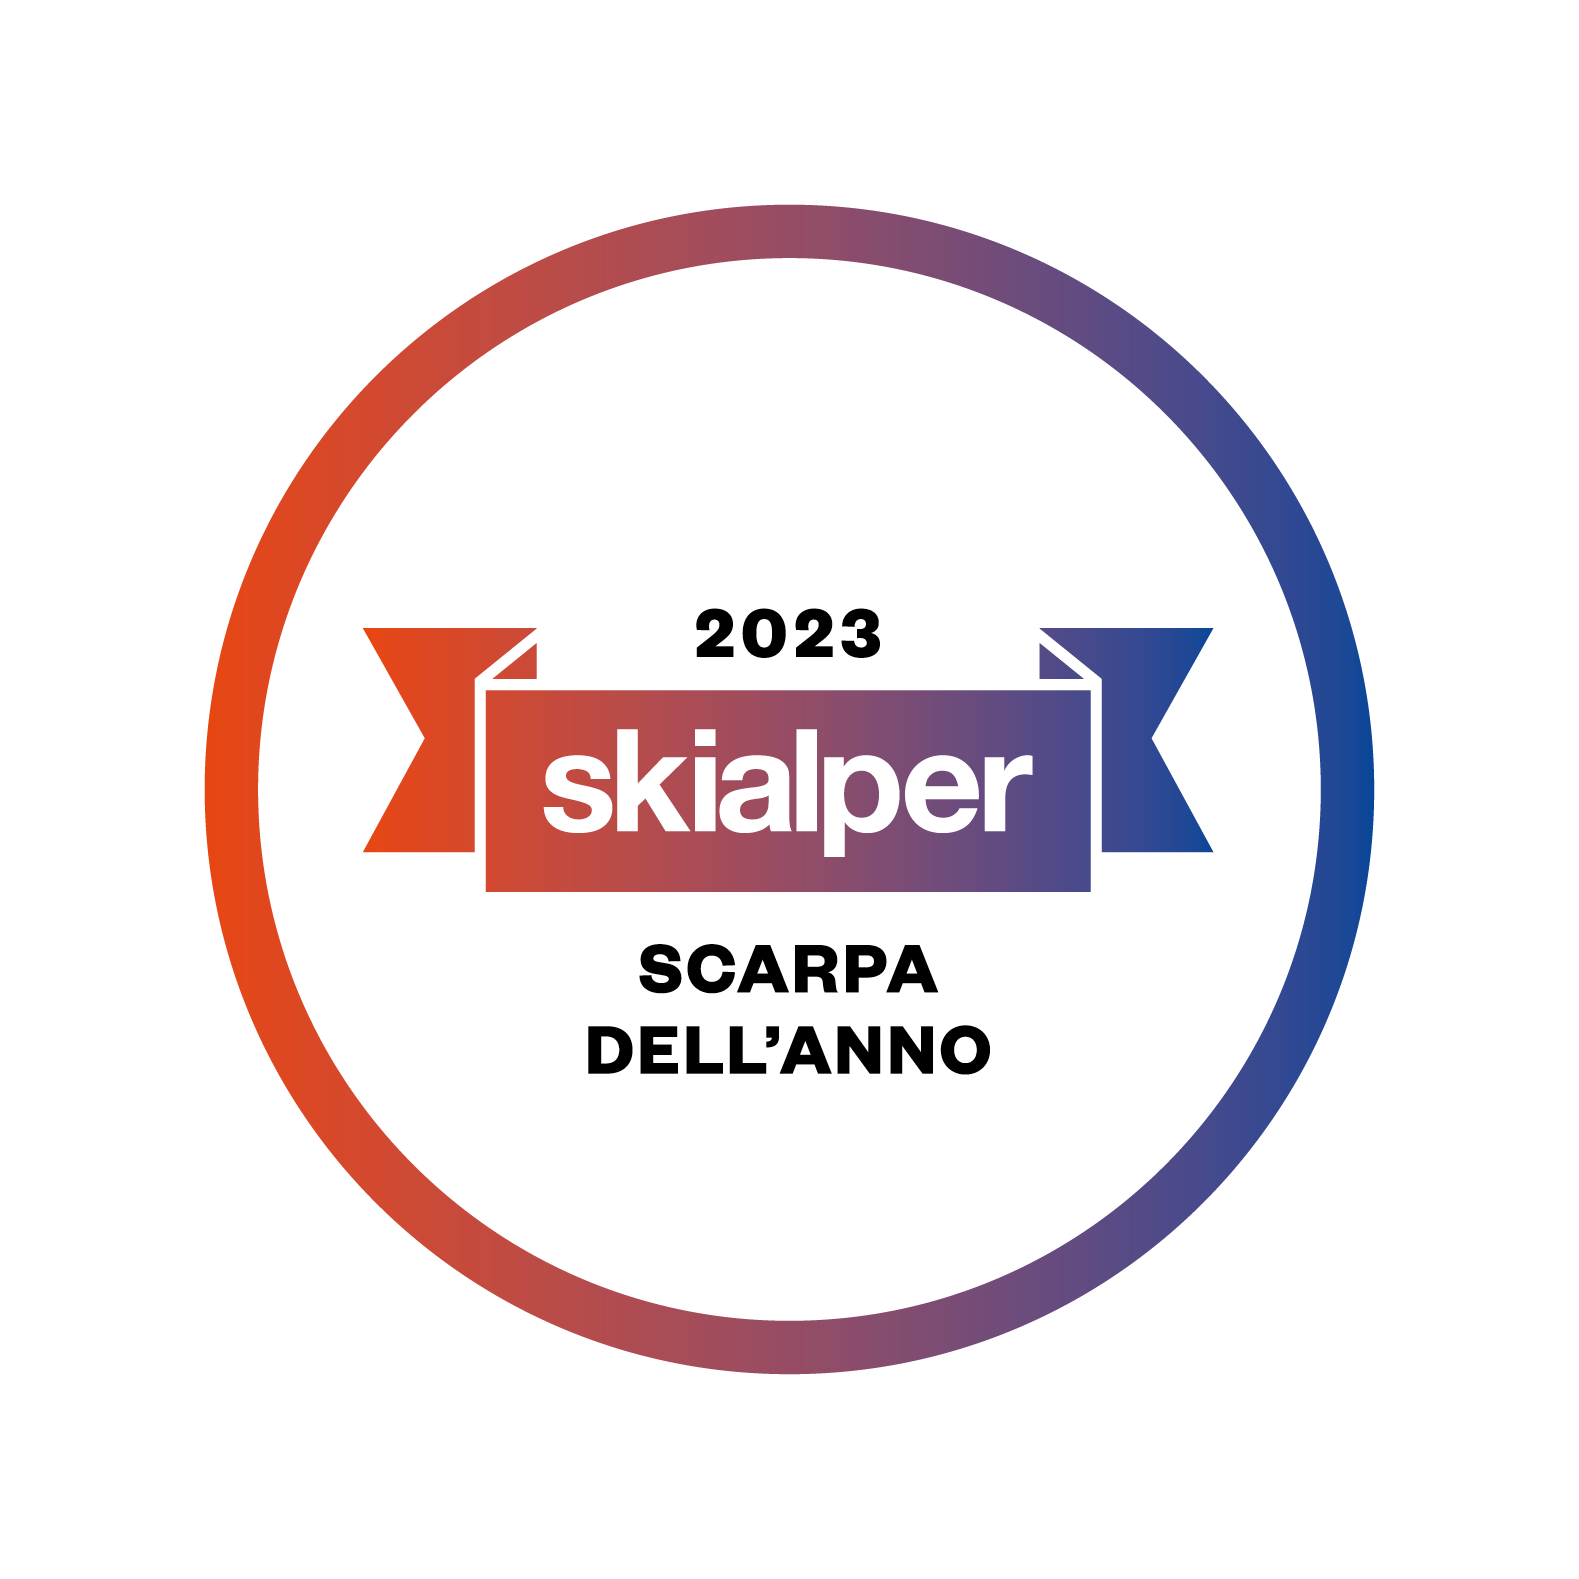 Skialper Award 2023 “Scarpa dell’anno